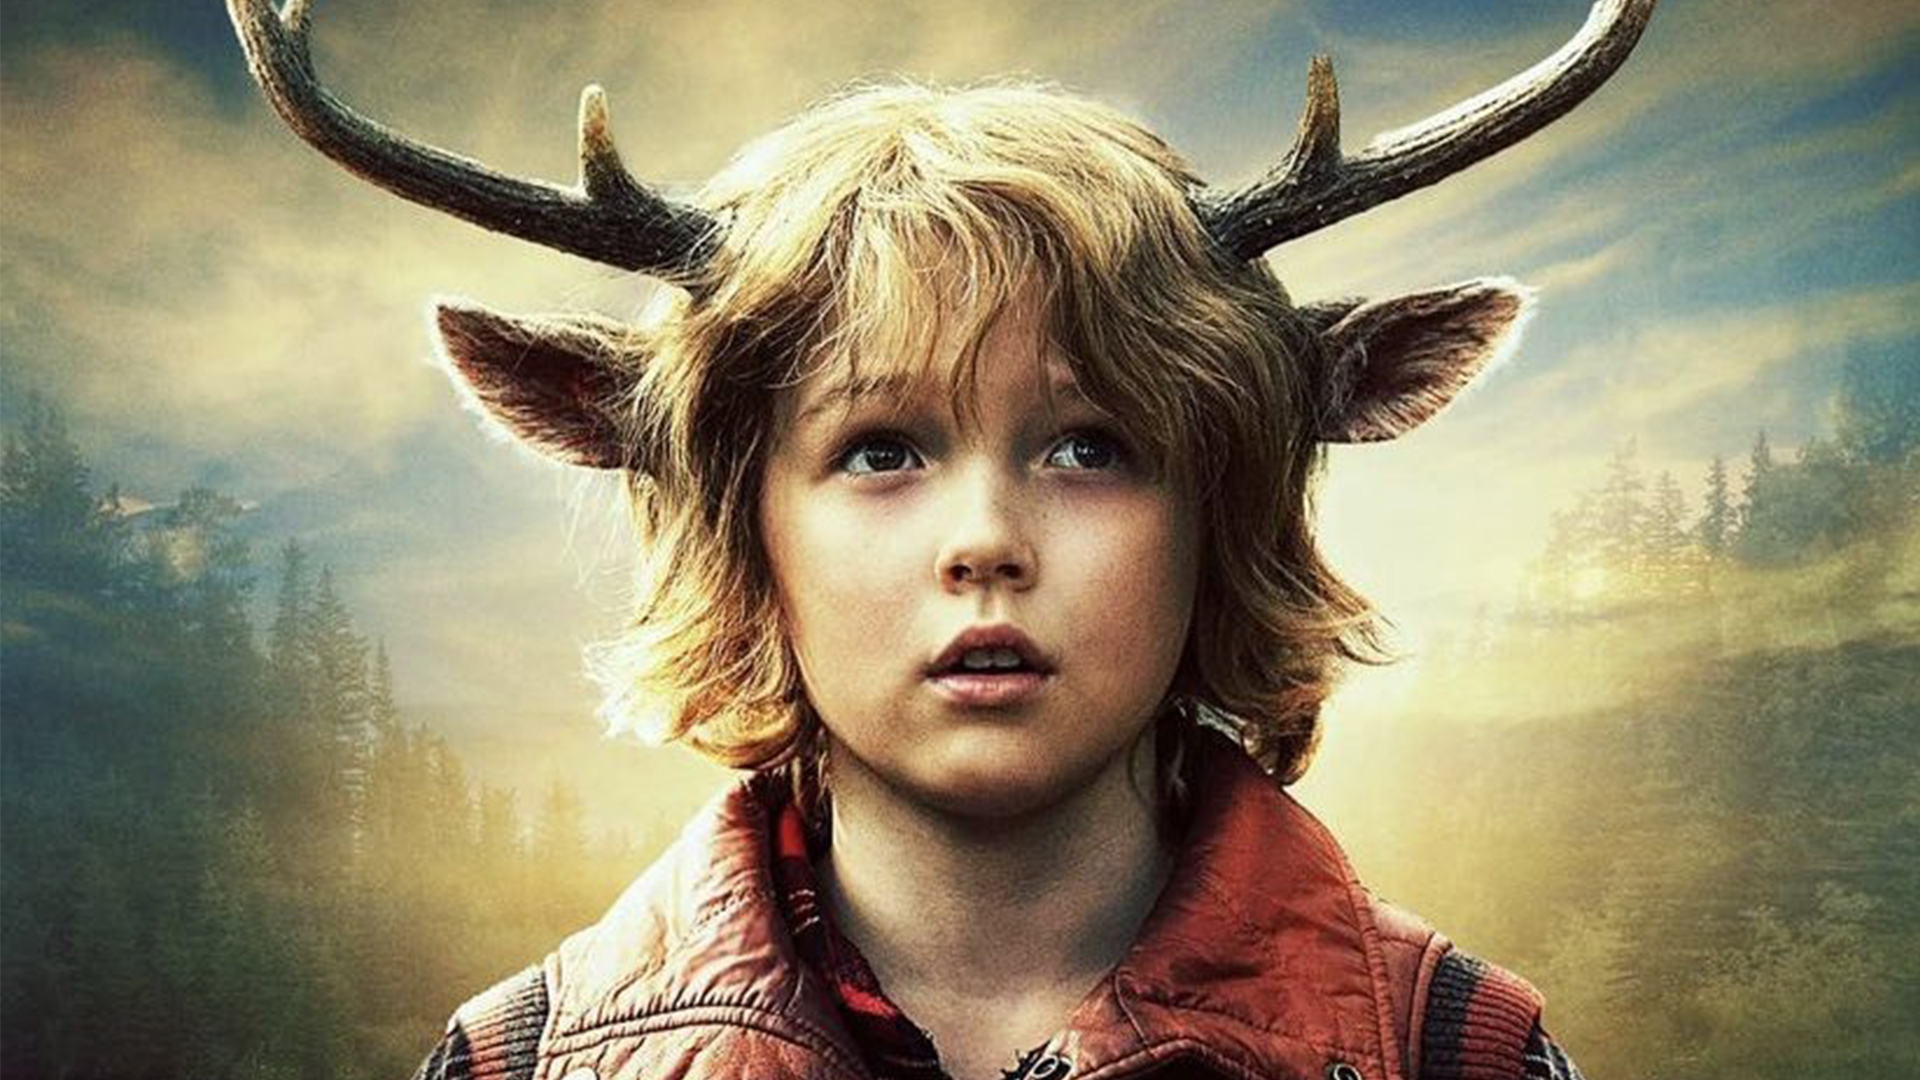 Мальчик с оленьими рогами (Сладкоежка) - обзор сериала Netflix